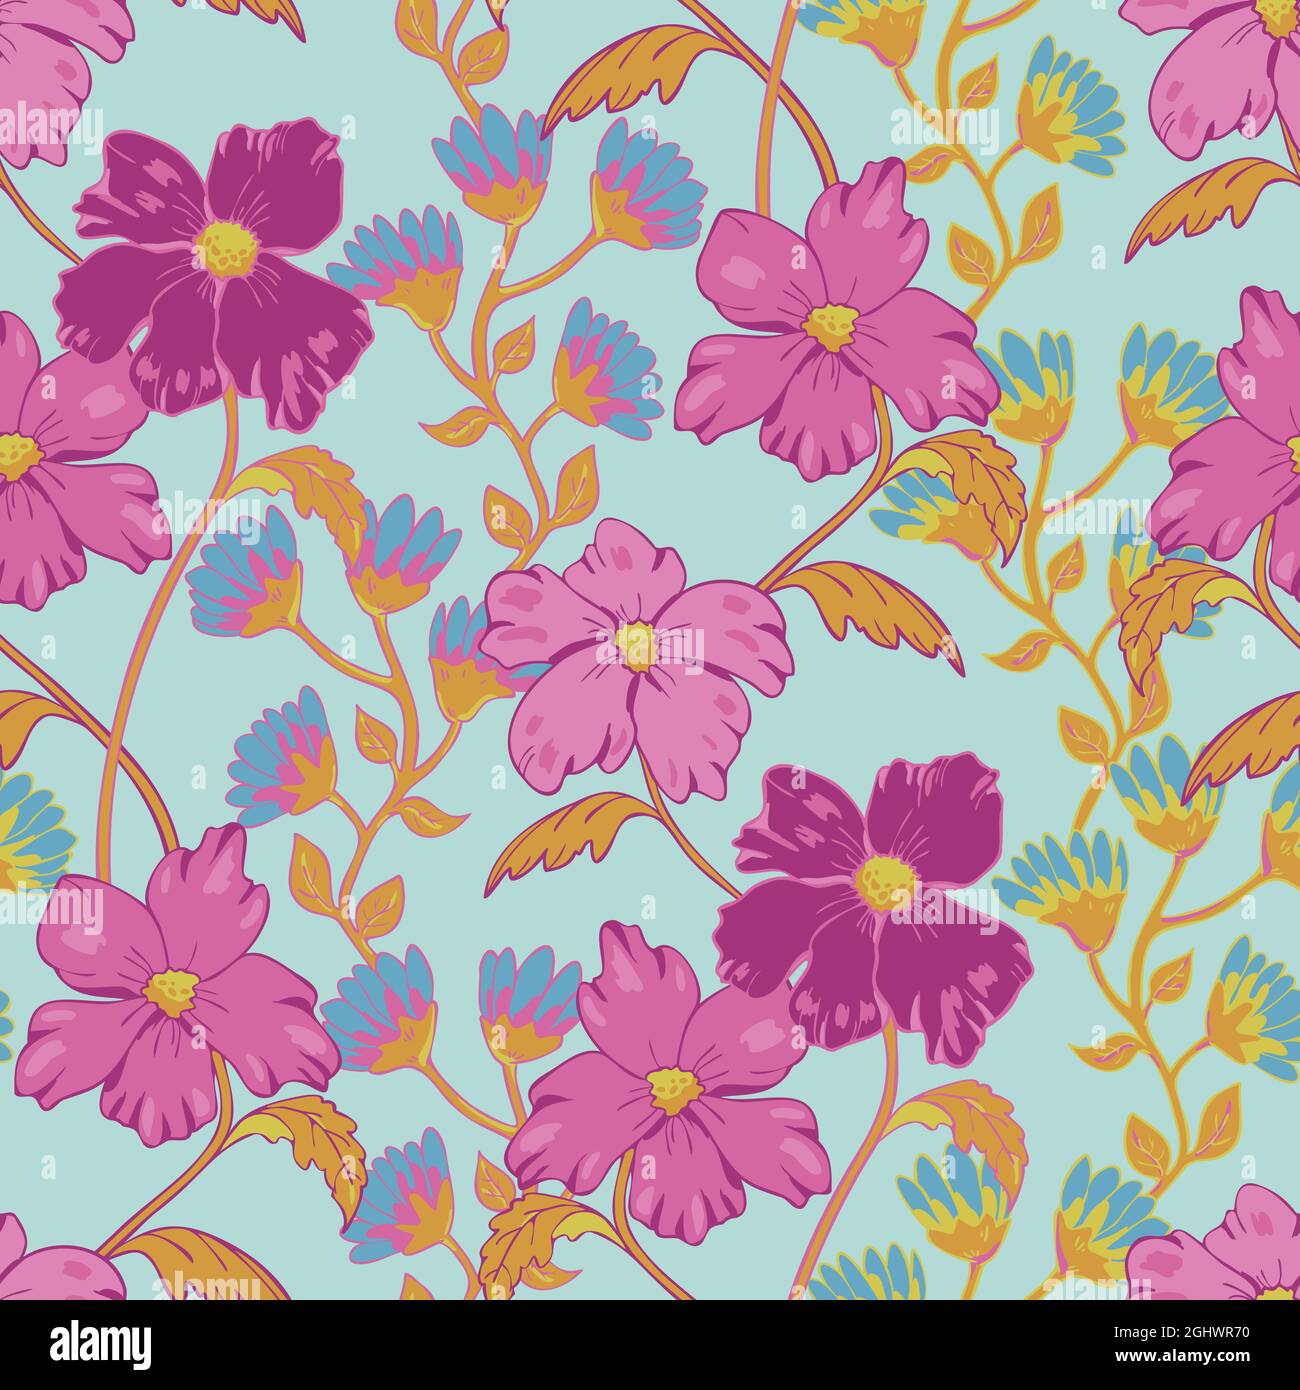 Vektor nahtlose Muster mit schönen Blumen auf hellblauem Hintergrund. Raffiniertes Design mit rosa Blüten. Stock Vektor